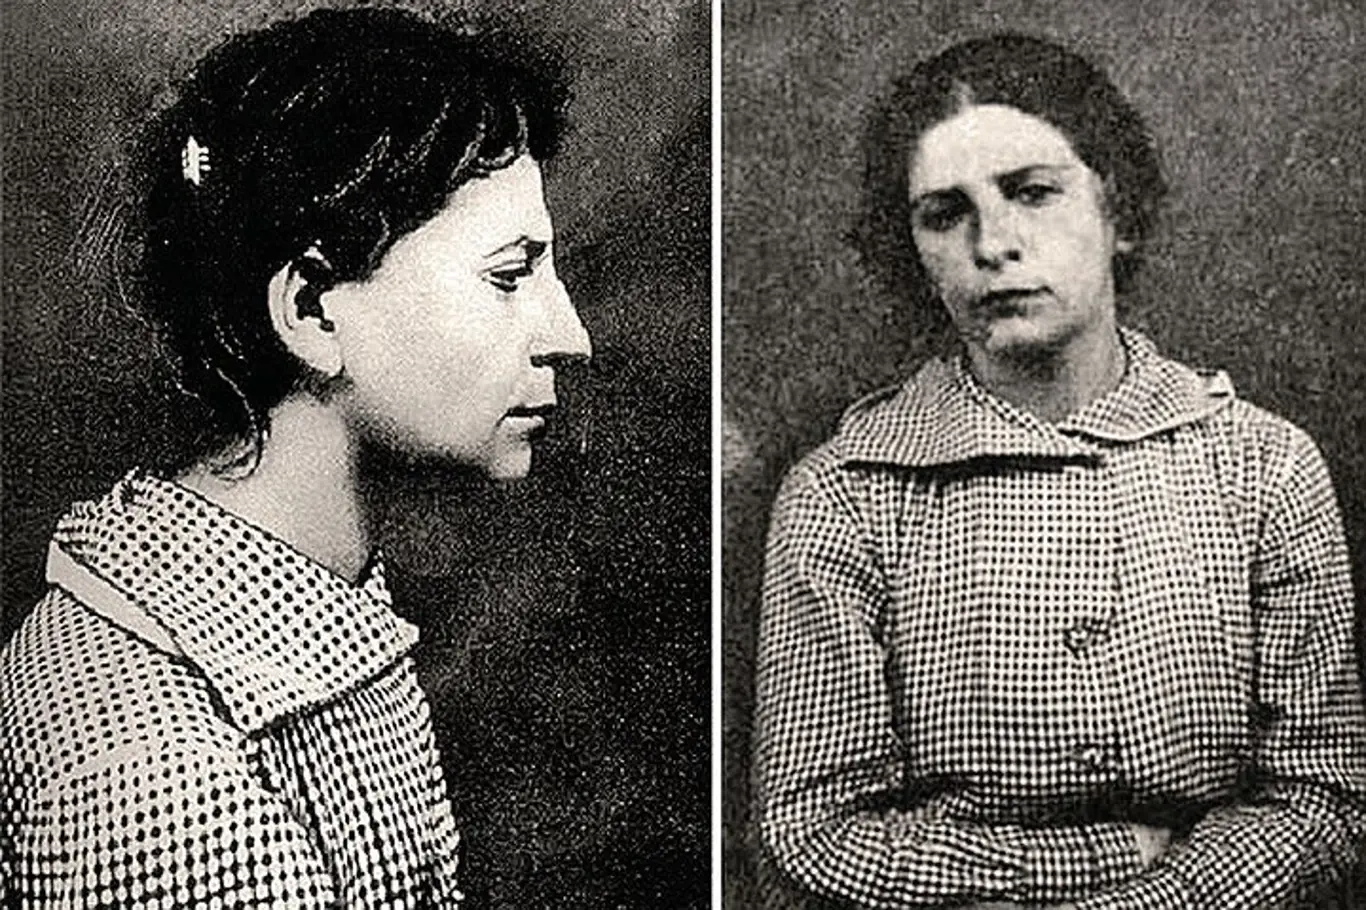 Dora Kaplanová, neboli Fanny Kaplanová. Revolucionářka, která se pokusila zabít Lenina.